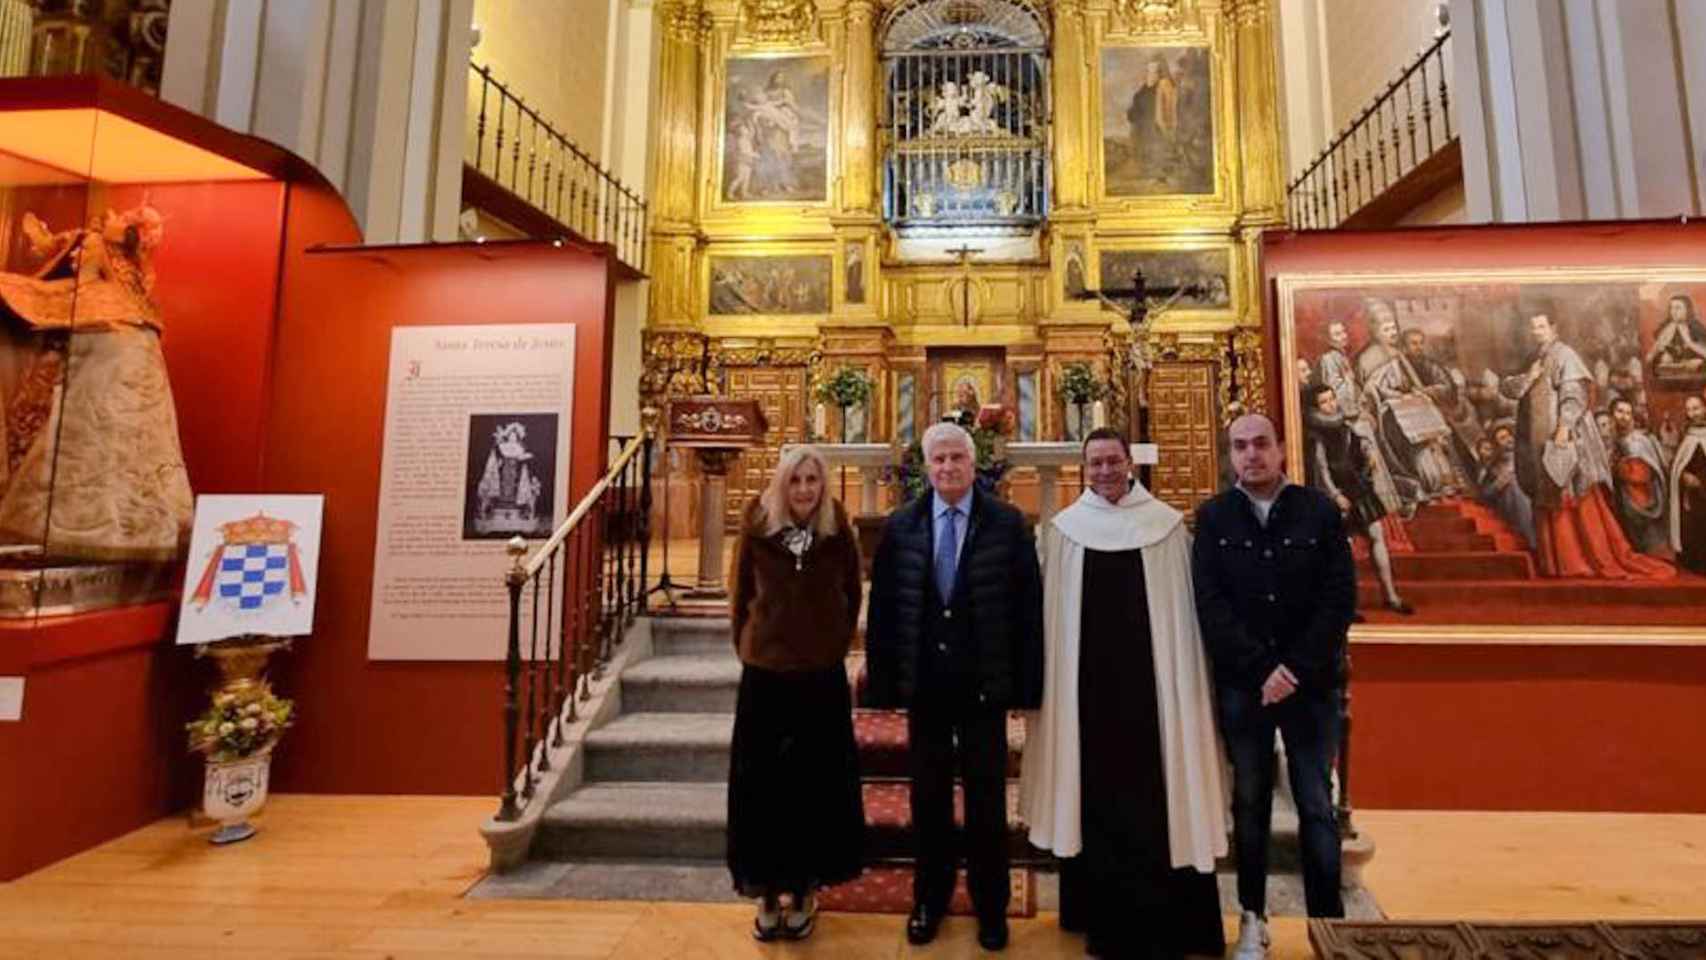 Visita del duque de Alba a la exposición sobre Santa Teresa en Alba de Tormes